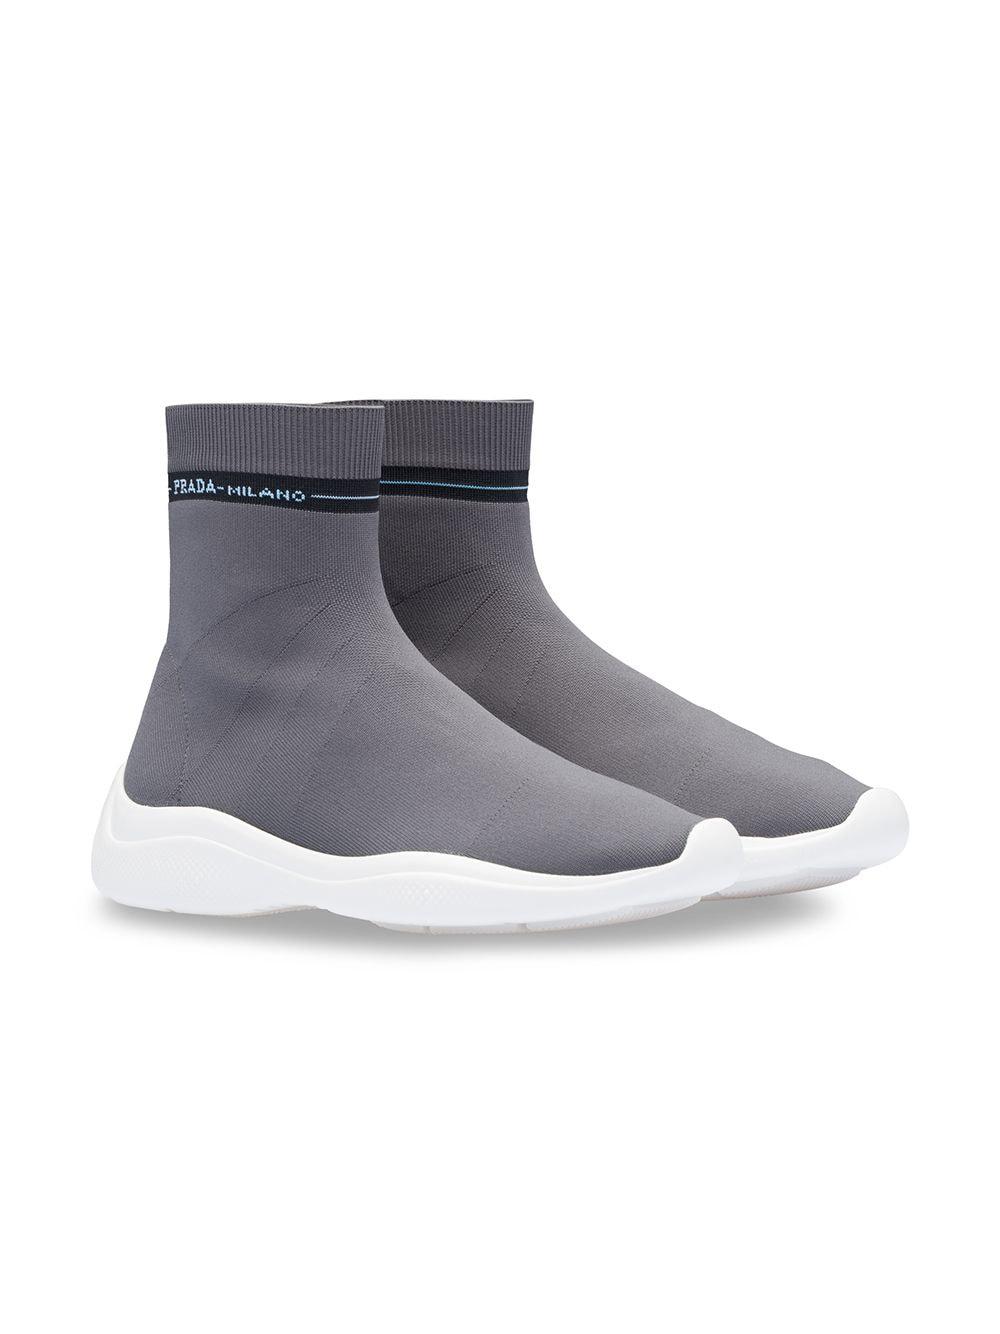 Prada Sock Sneakers in Gray | Lyst